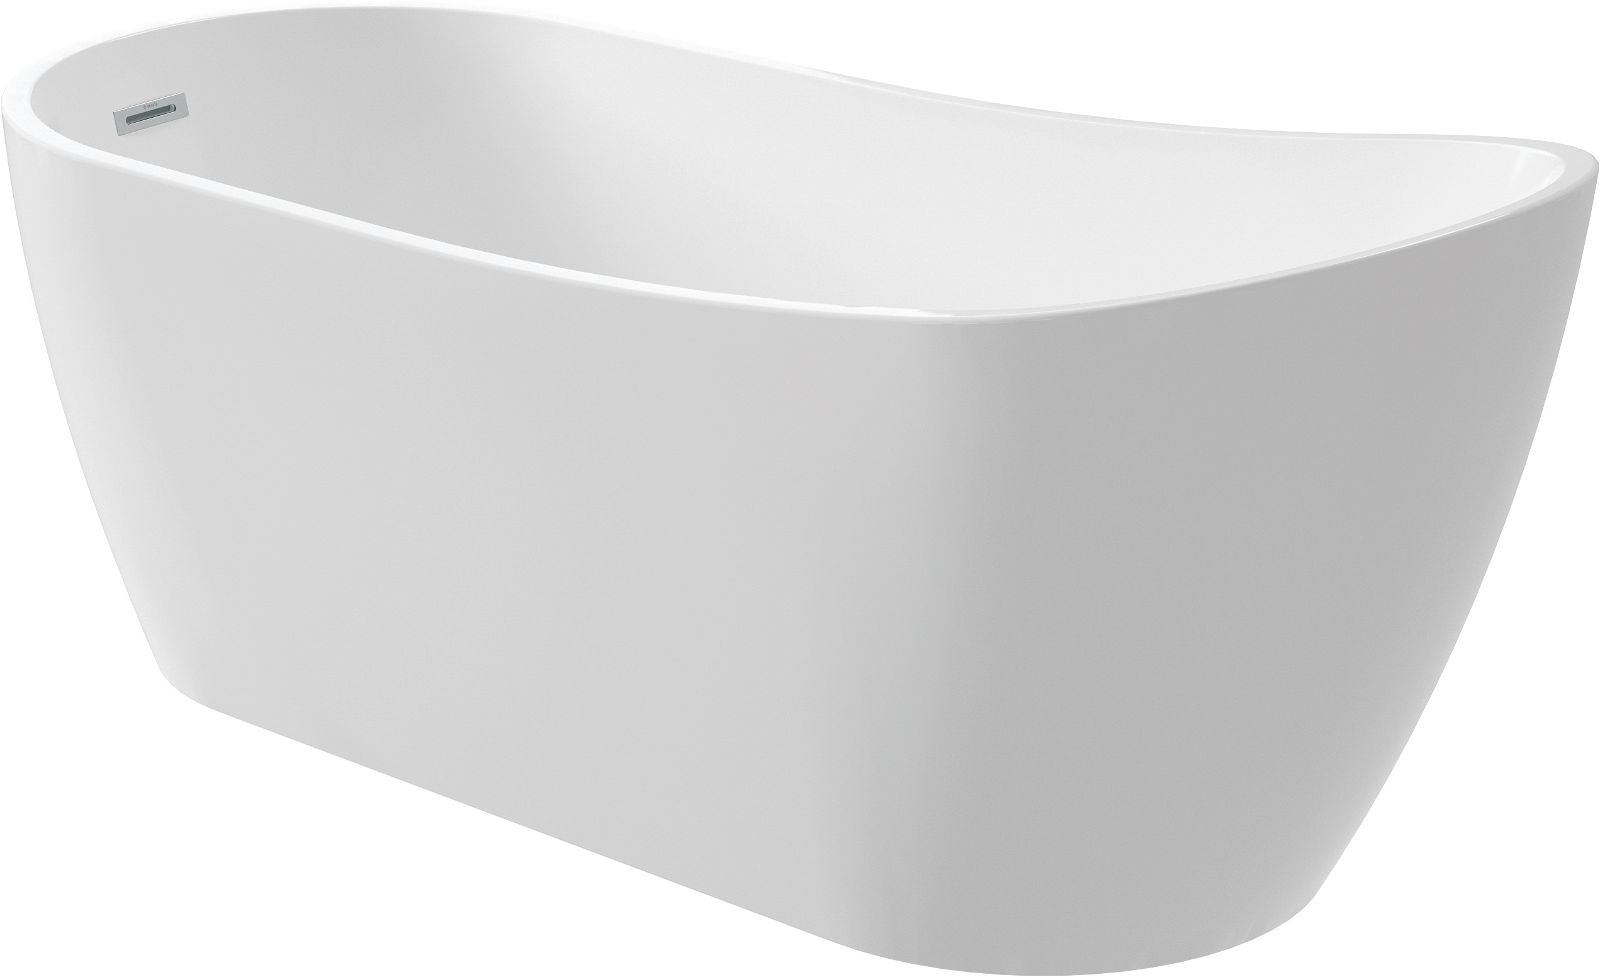 Acryl-Badewanne, freistehend, oval - 170 cm - KDA_017W - Główne zdjęcie produktowe